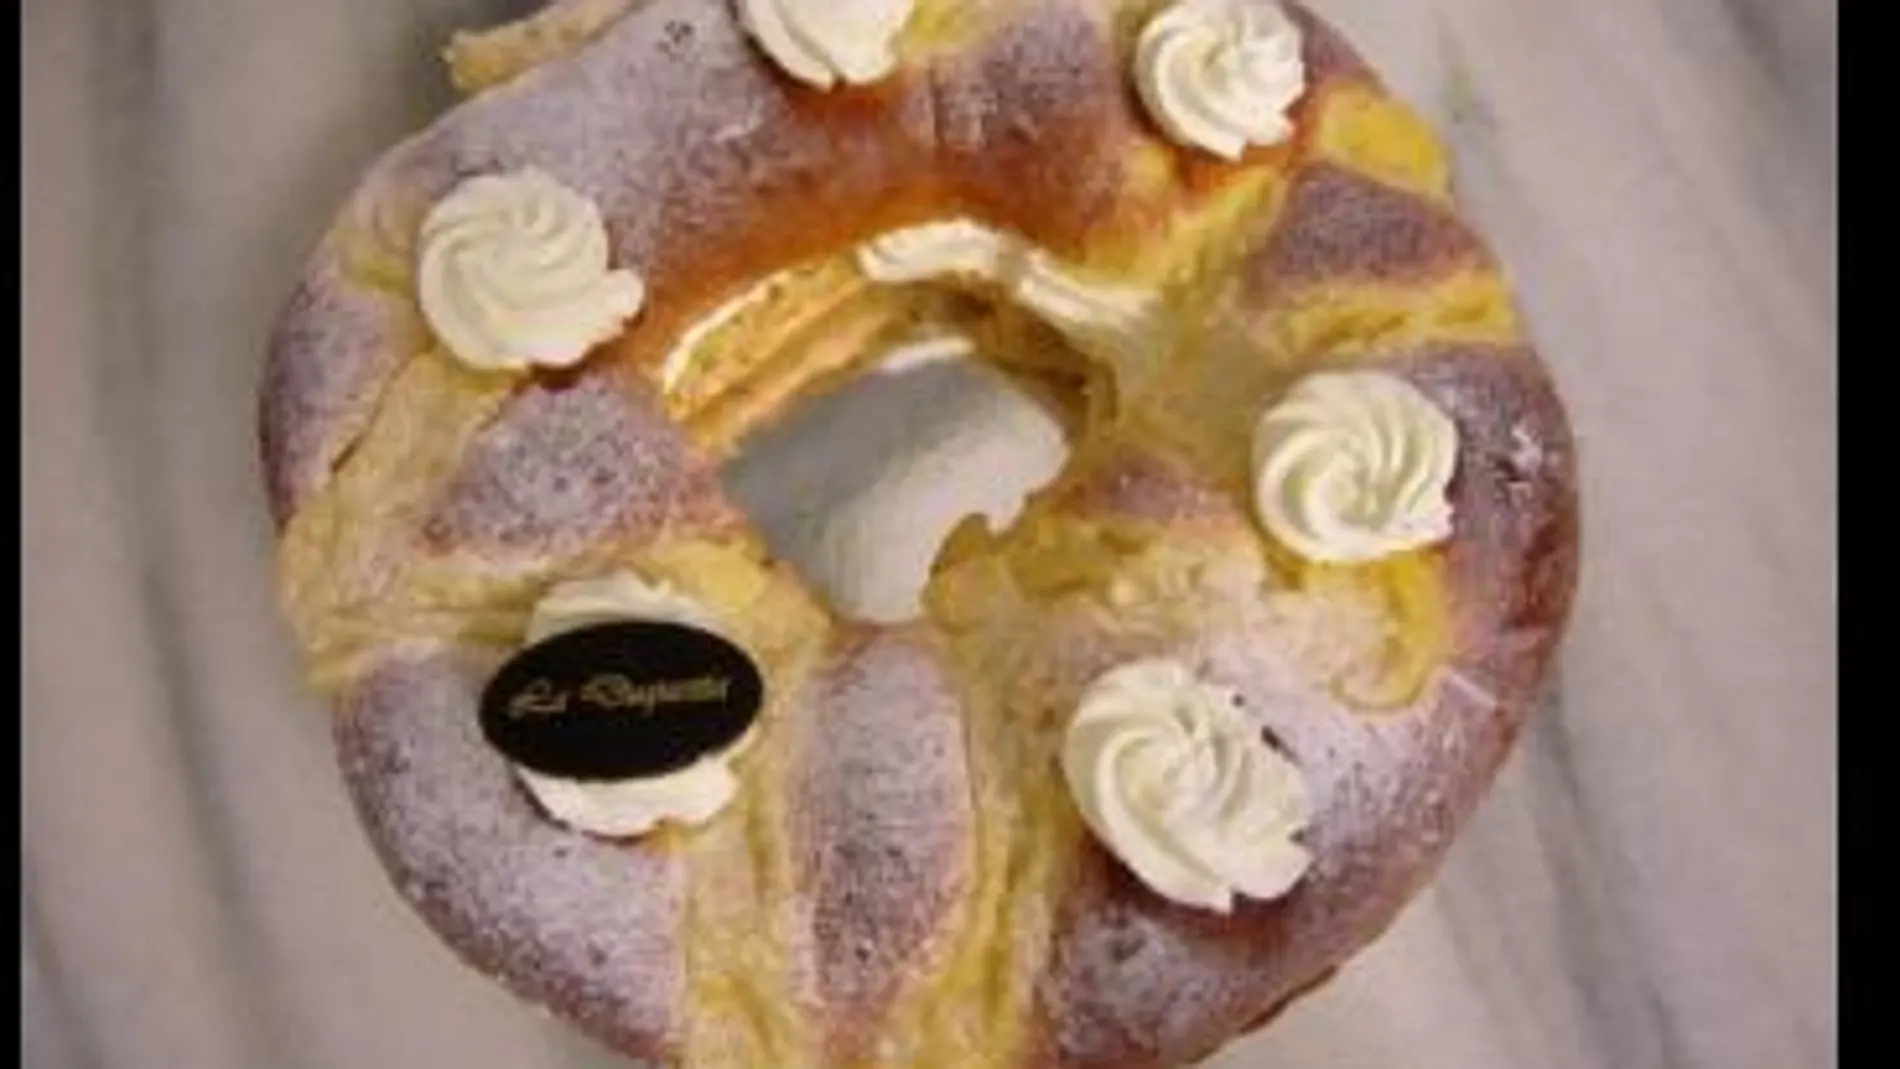 Corona de la Almudena de nata de la pastelería “La Duquesita”